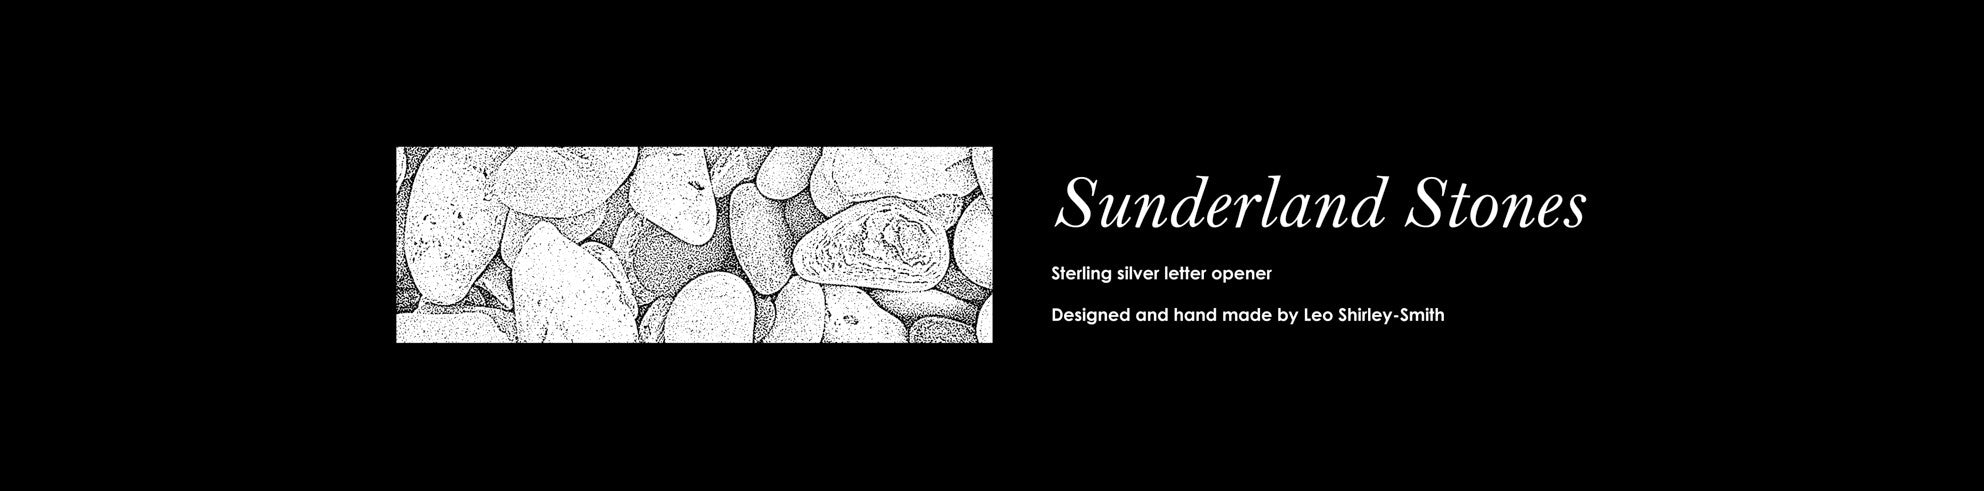 Sunderland Stones Silver Letter Opener-Packaging